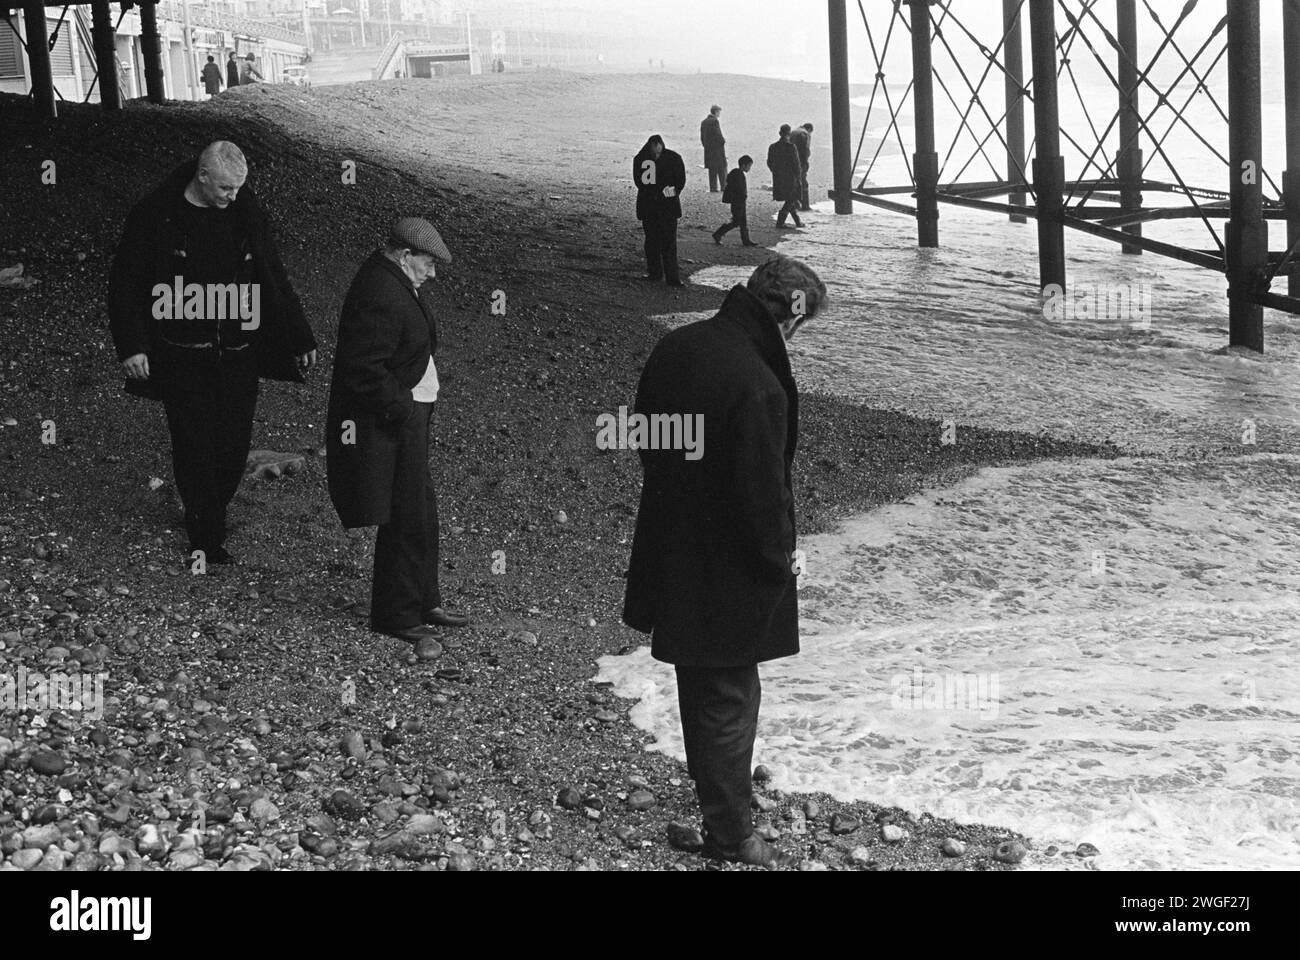 Strandkämmen unter dem Brighton Pier. Eine Gruppe von Männern am Strand wartet auf Geldmünzen, die mit der Flut gespült werden. Münzen, die nach einem geschäftigen Samstag durch den Lattenboden des Piers gefallen waren. Strandbewohner treffen sich am Sonntagmorgen. Manchmal auch als Blacksanding bekannt. Brighton, East Sussex, England, 1970 1980er Jahre Großbritannien HOMER SYKES Stockfoto